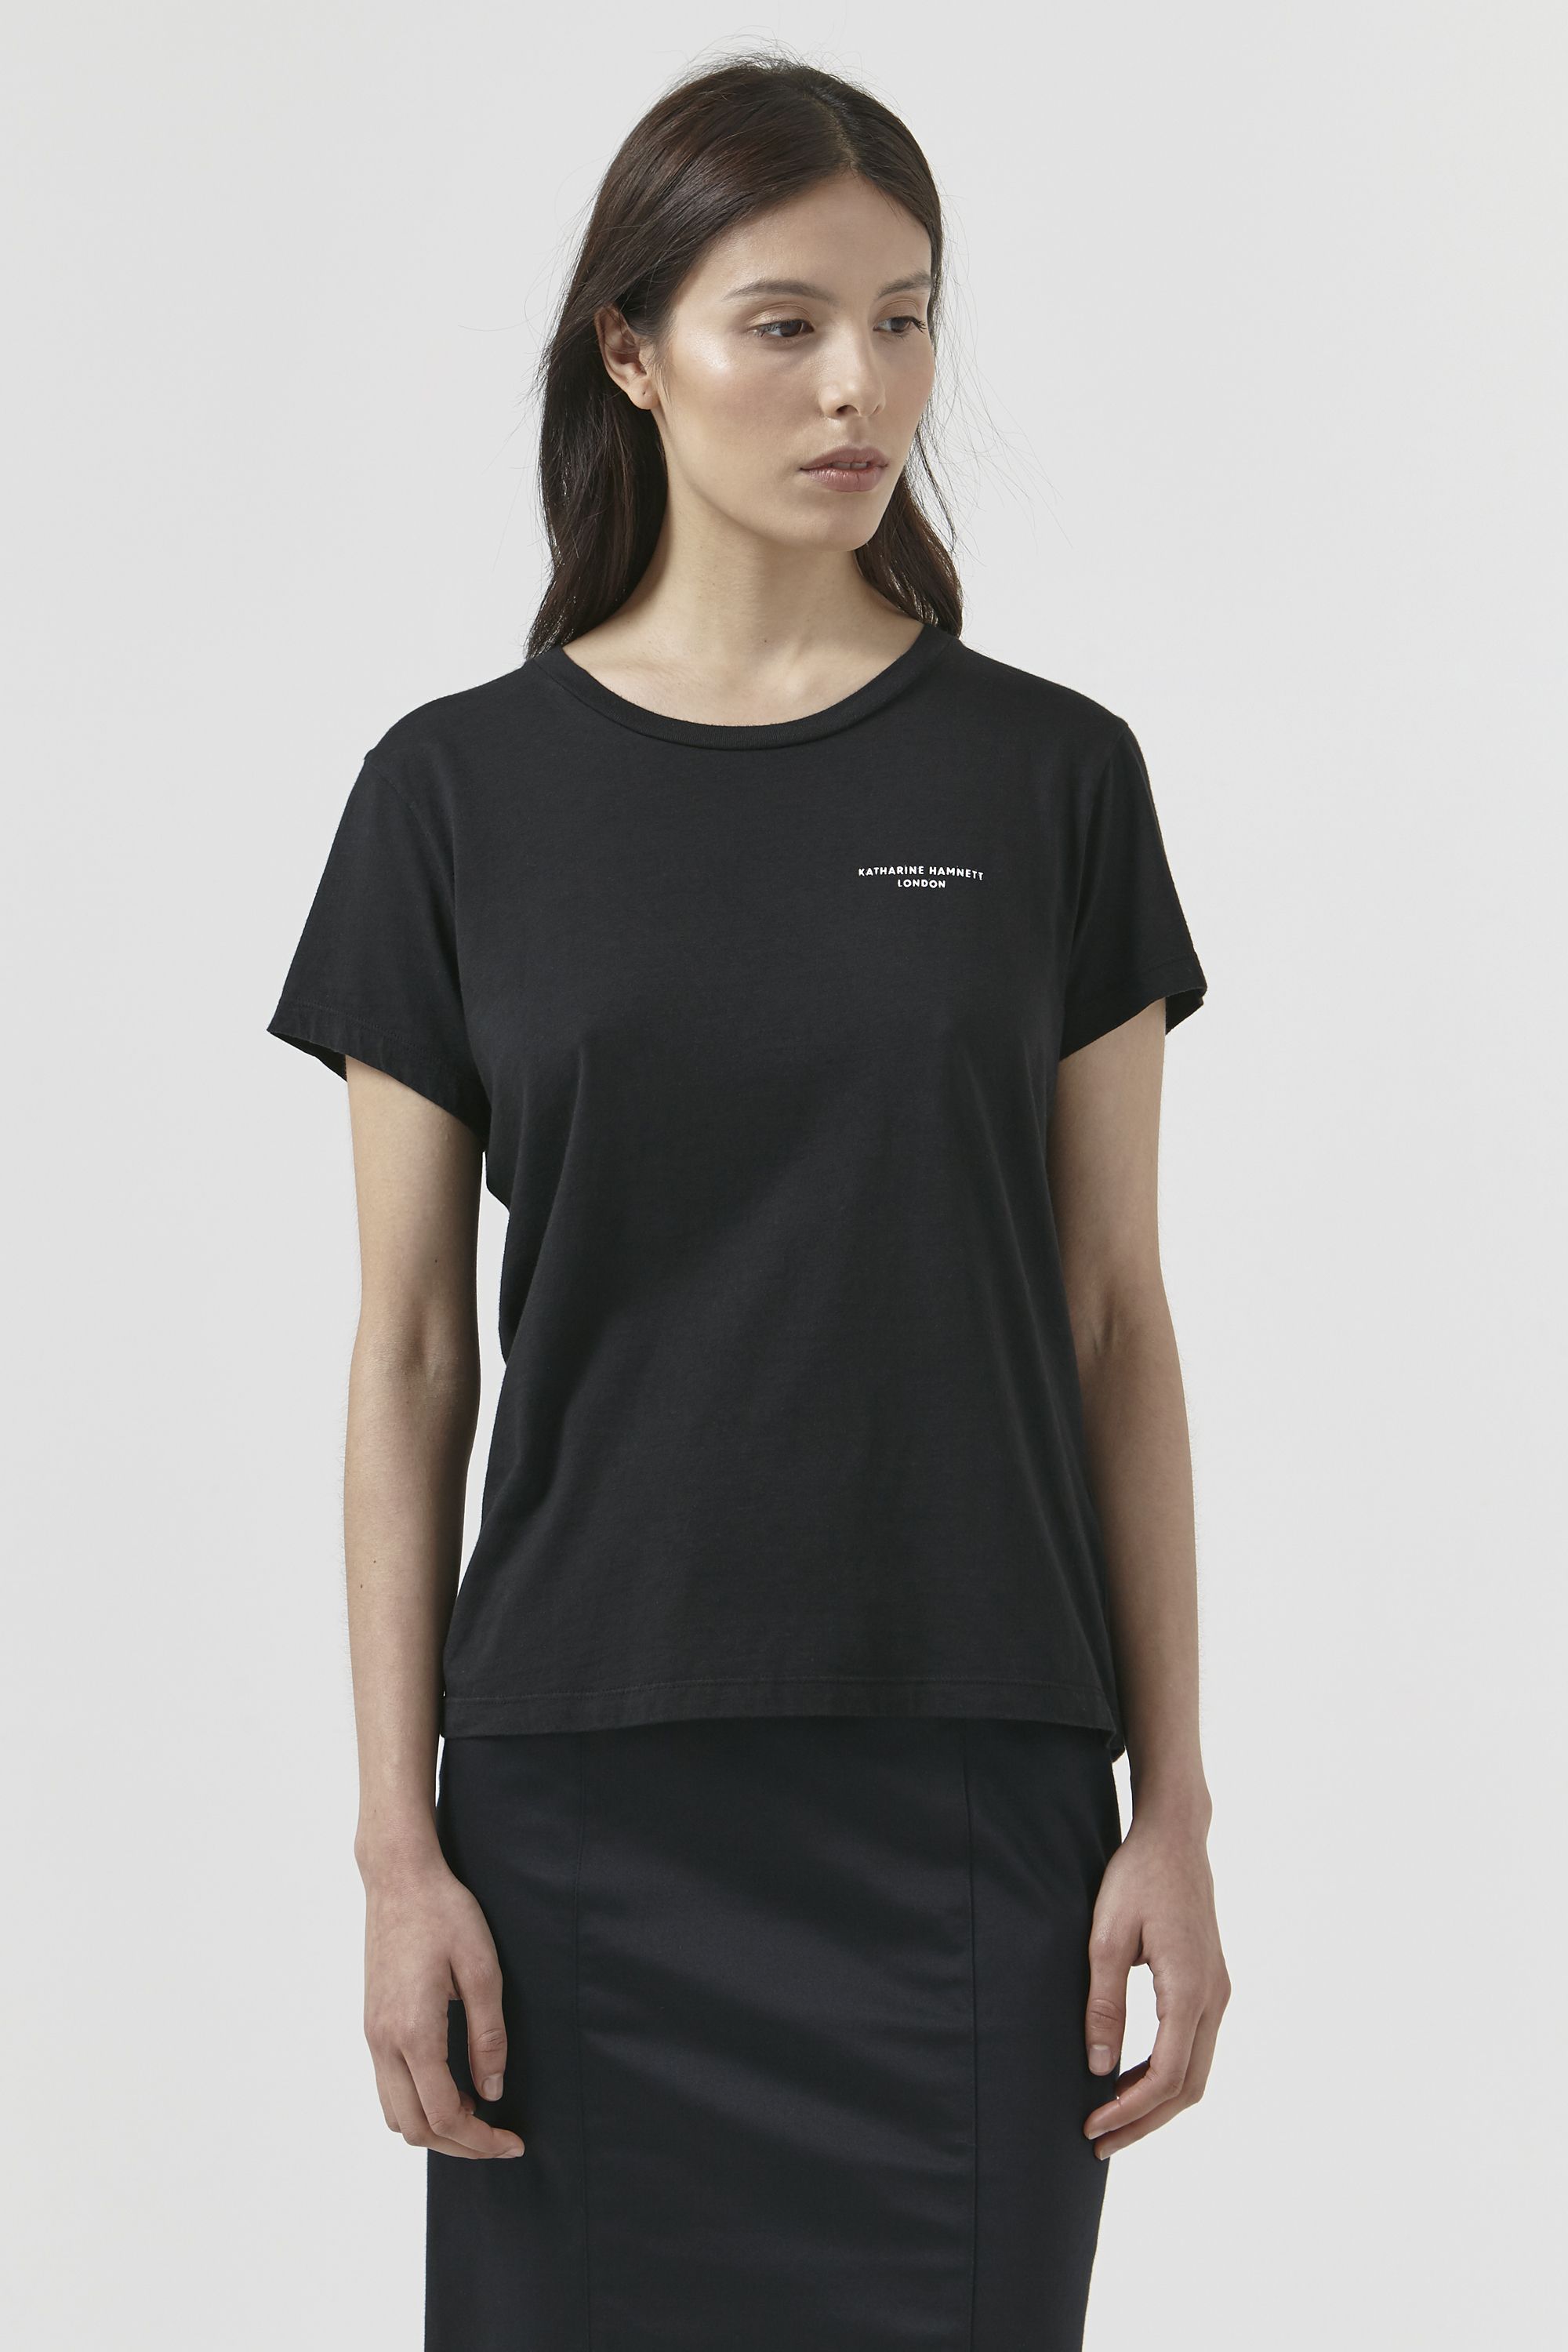 Katie by Katharine Hamnett - Black Logo t-shirt - Women